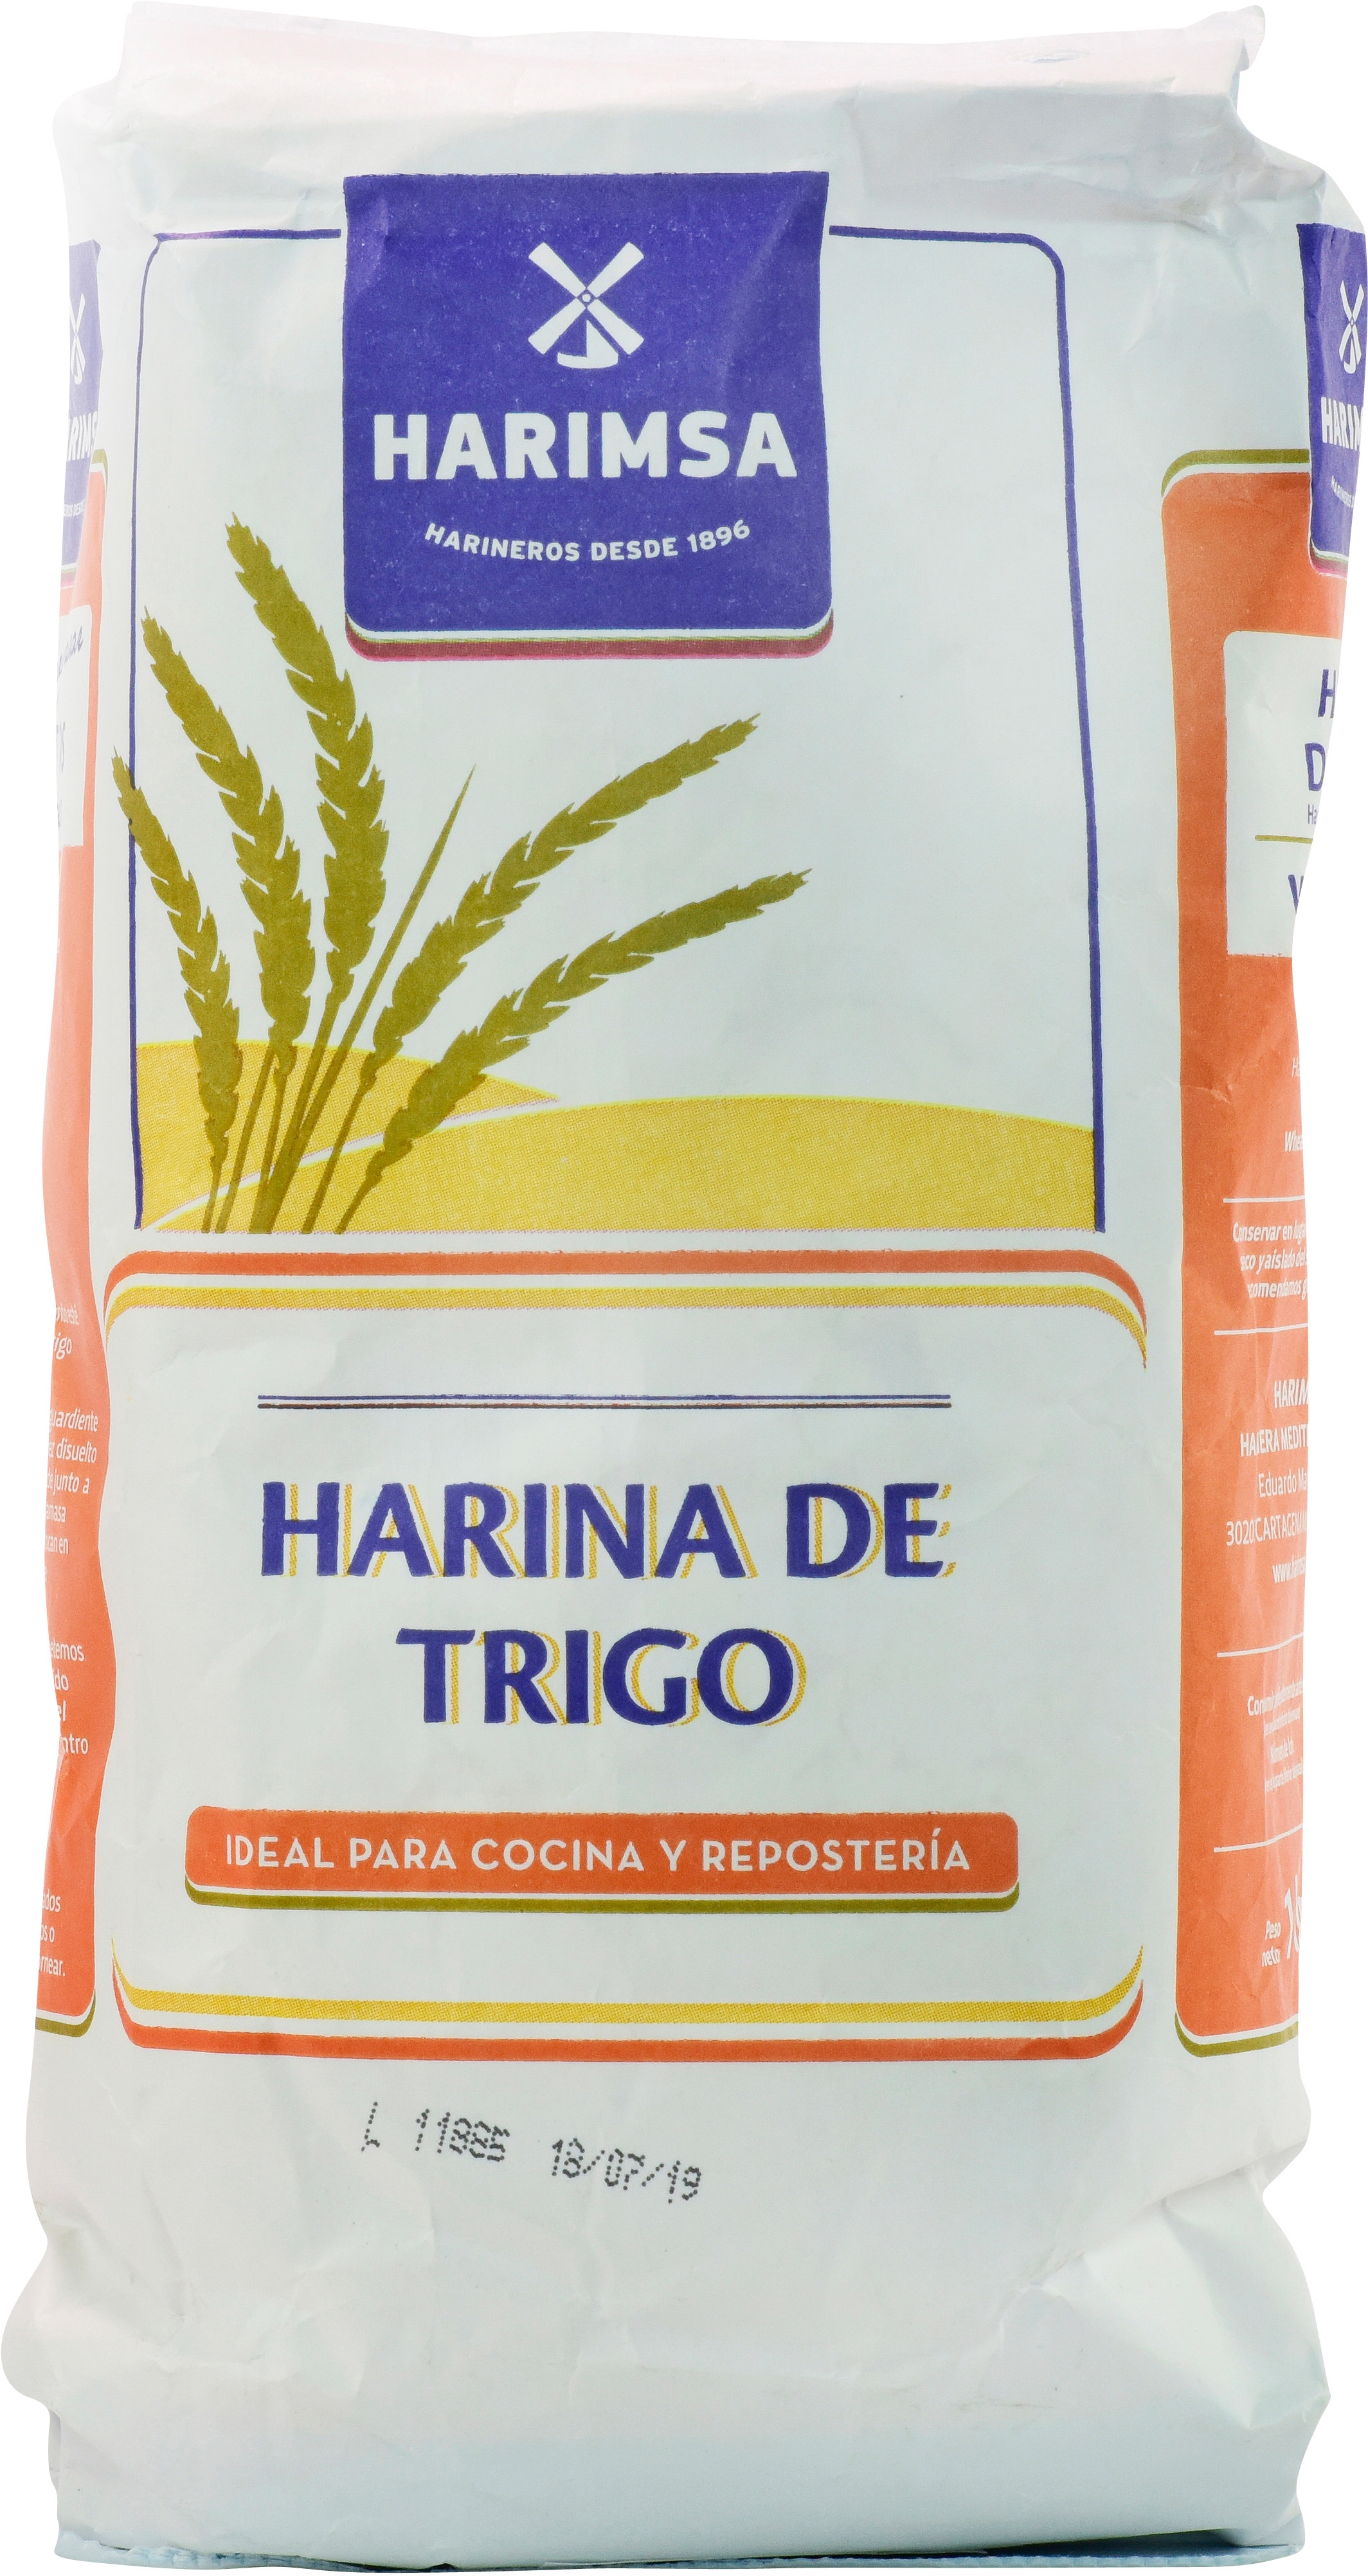 Harina de trigo ideal para cocina y repostería